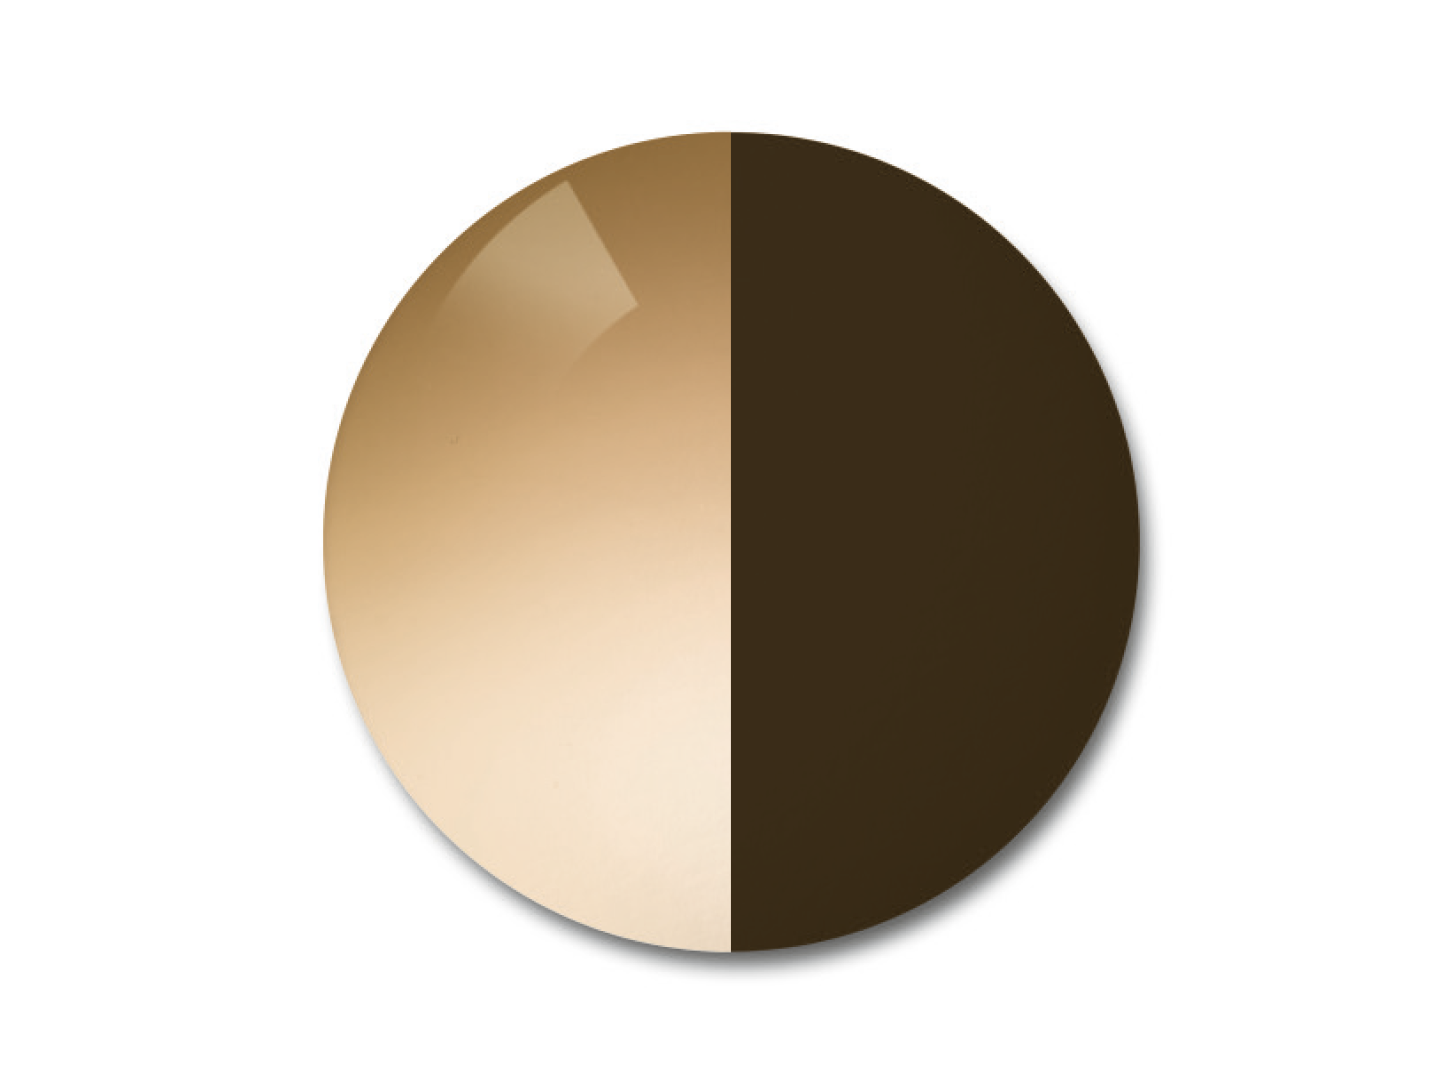 자이스 어댑티브선 변색 렌즈 중 그라데이션 브라운 색상을 보여주는 이미지